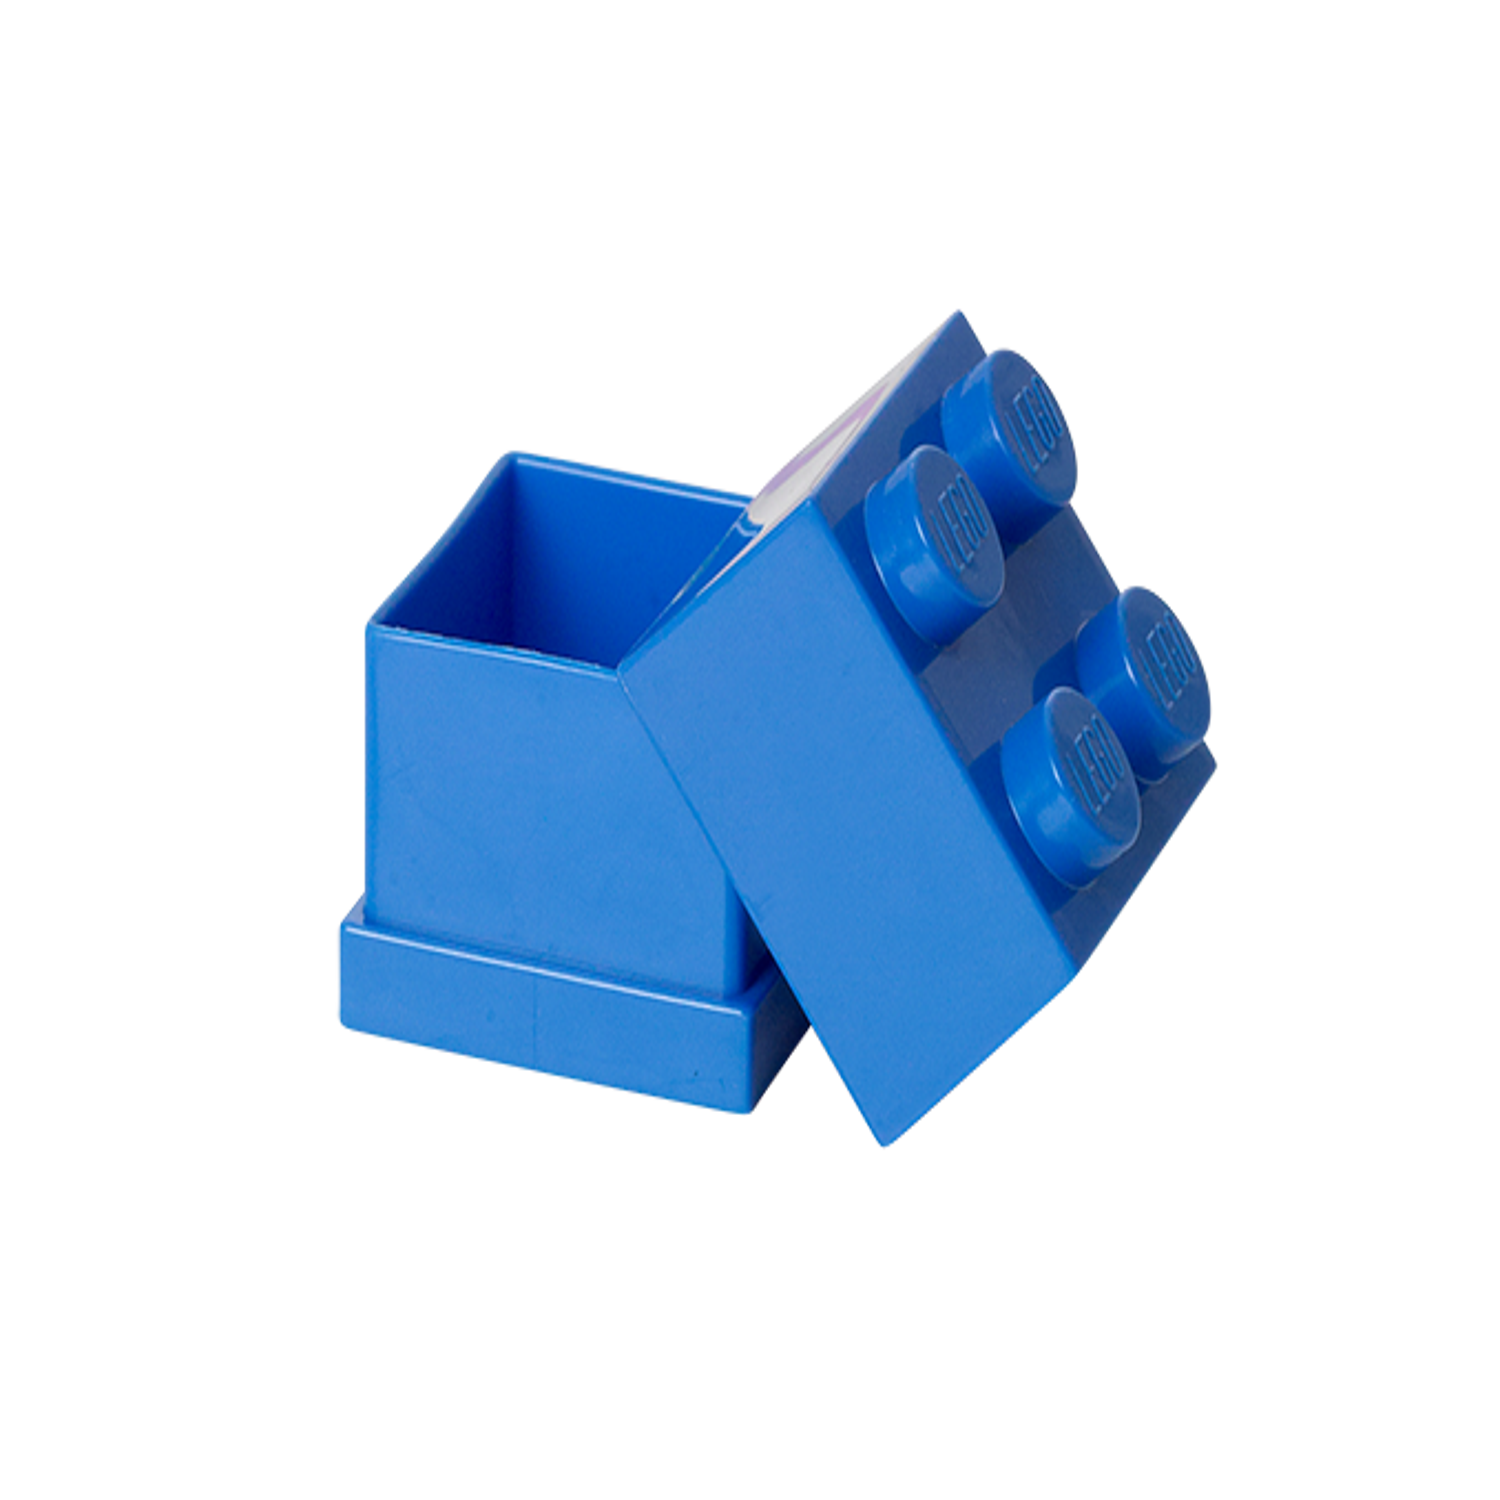 LEGO Mini Box